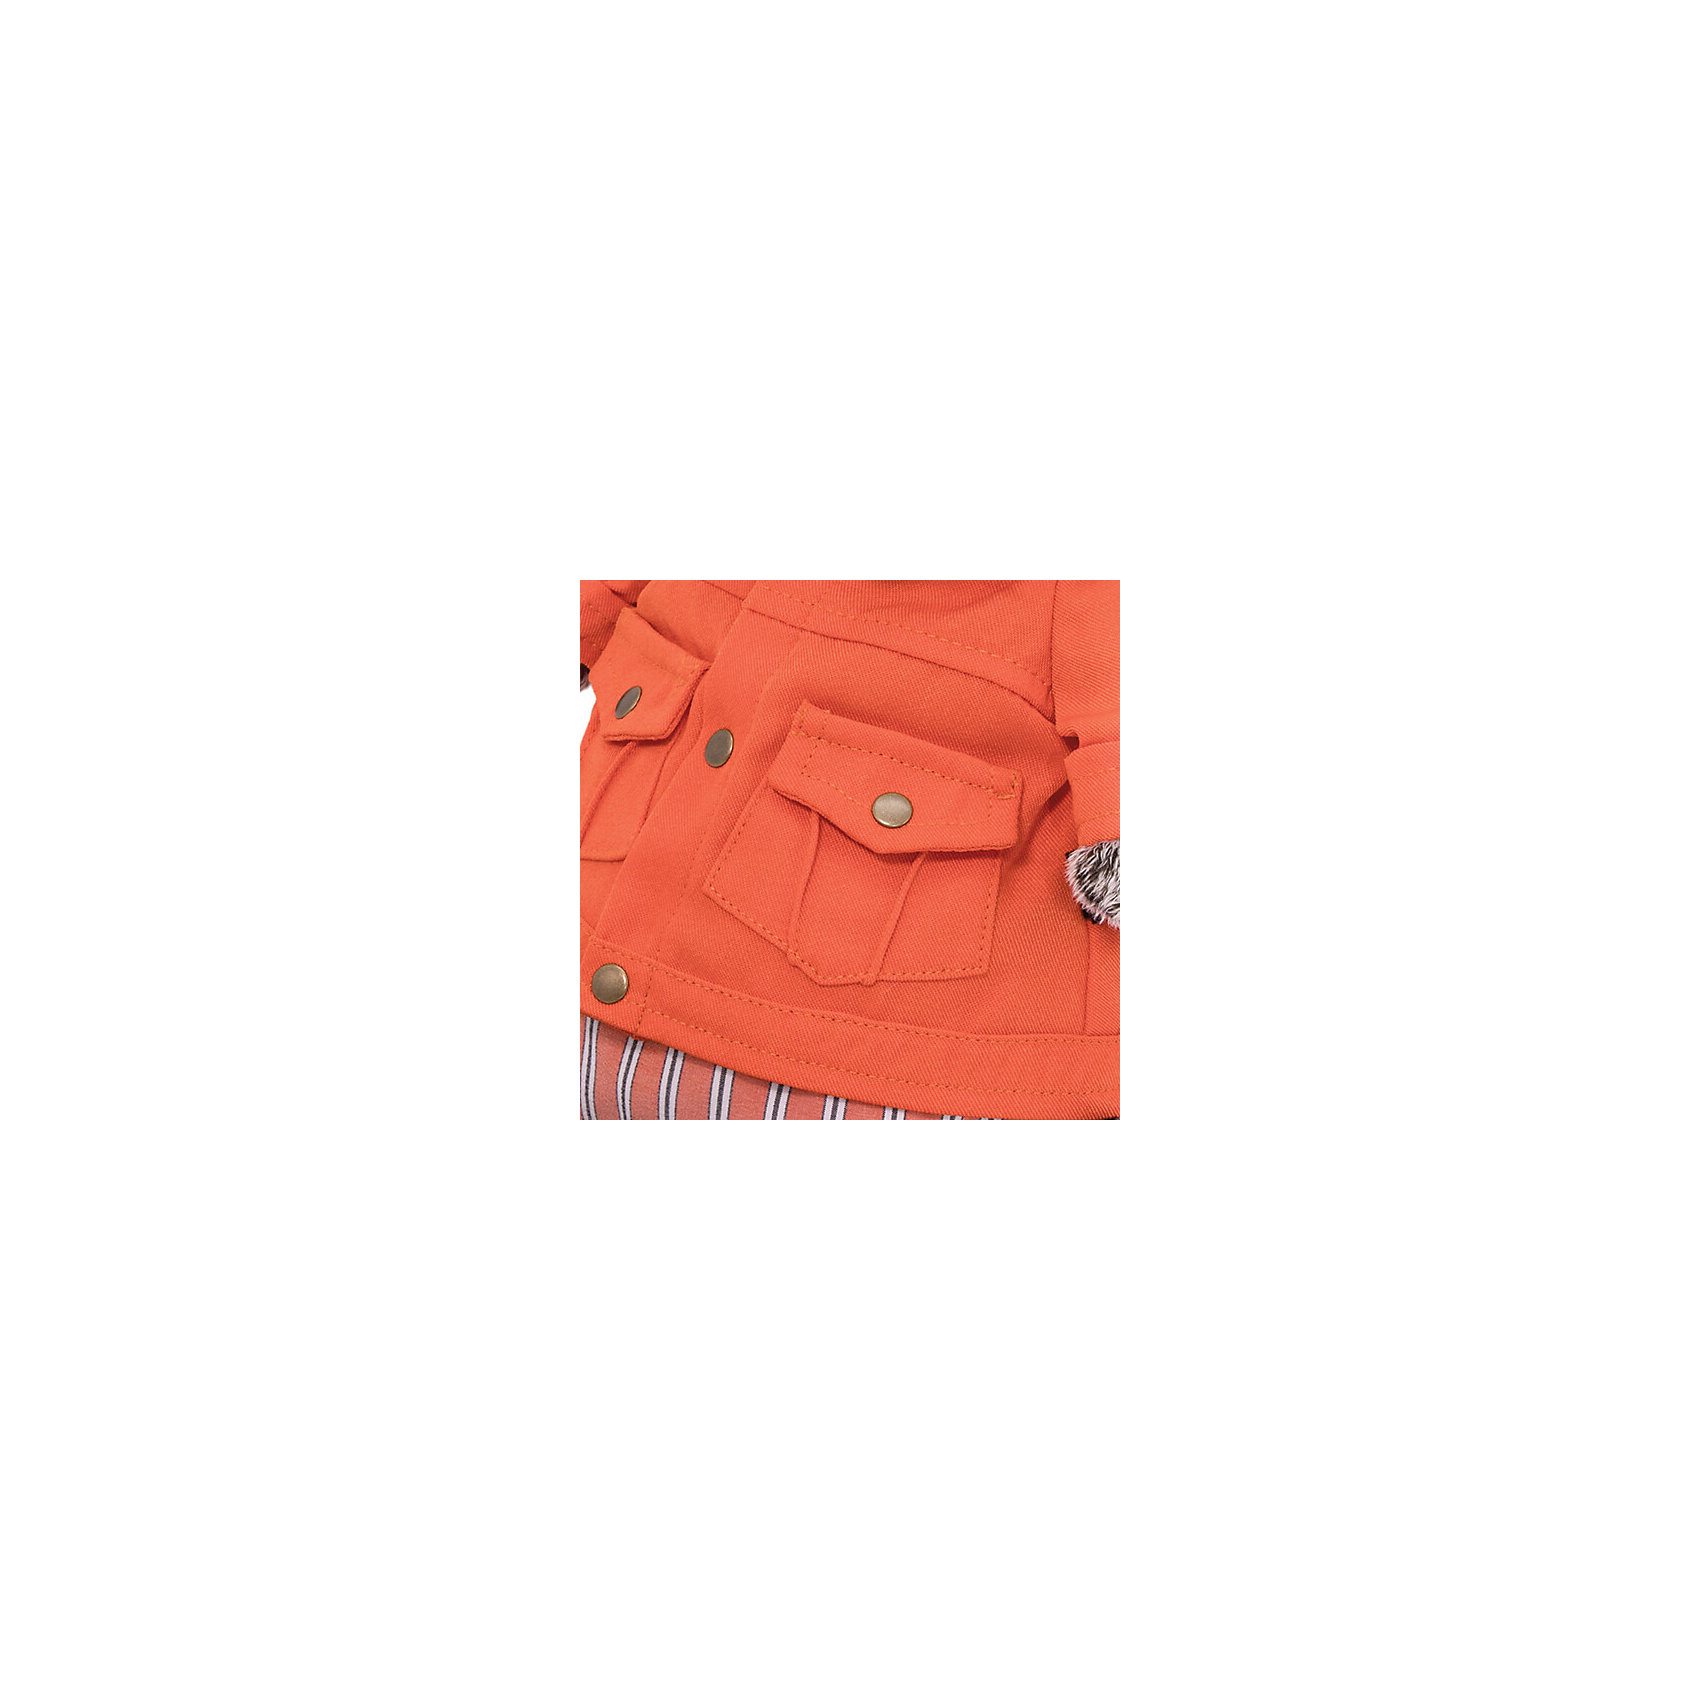 фото Мягкая игрушка budi basa кот басик в оранжевой куртке и штанах, 25 см